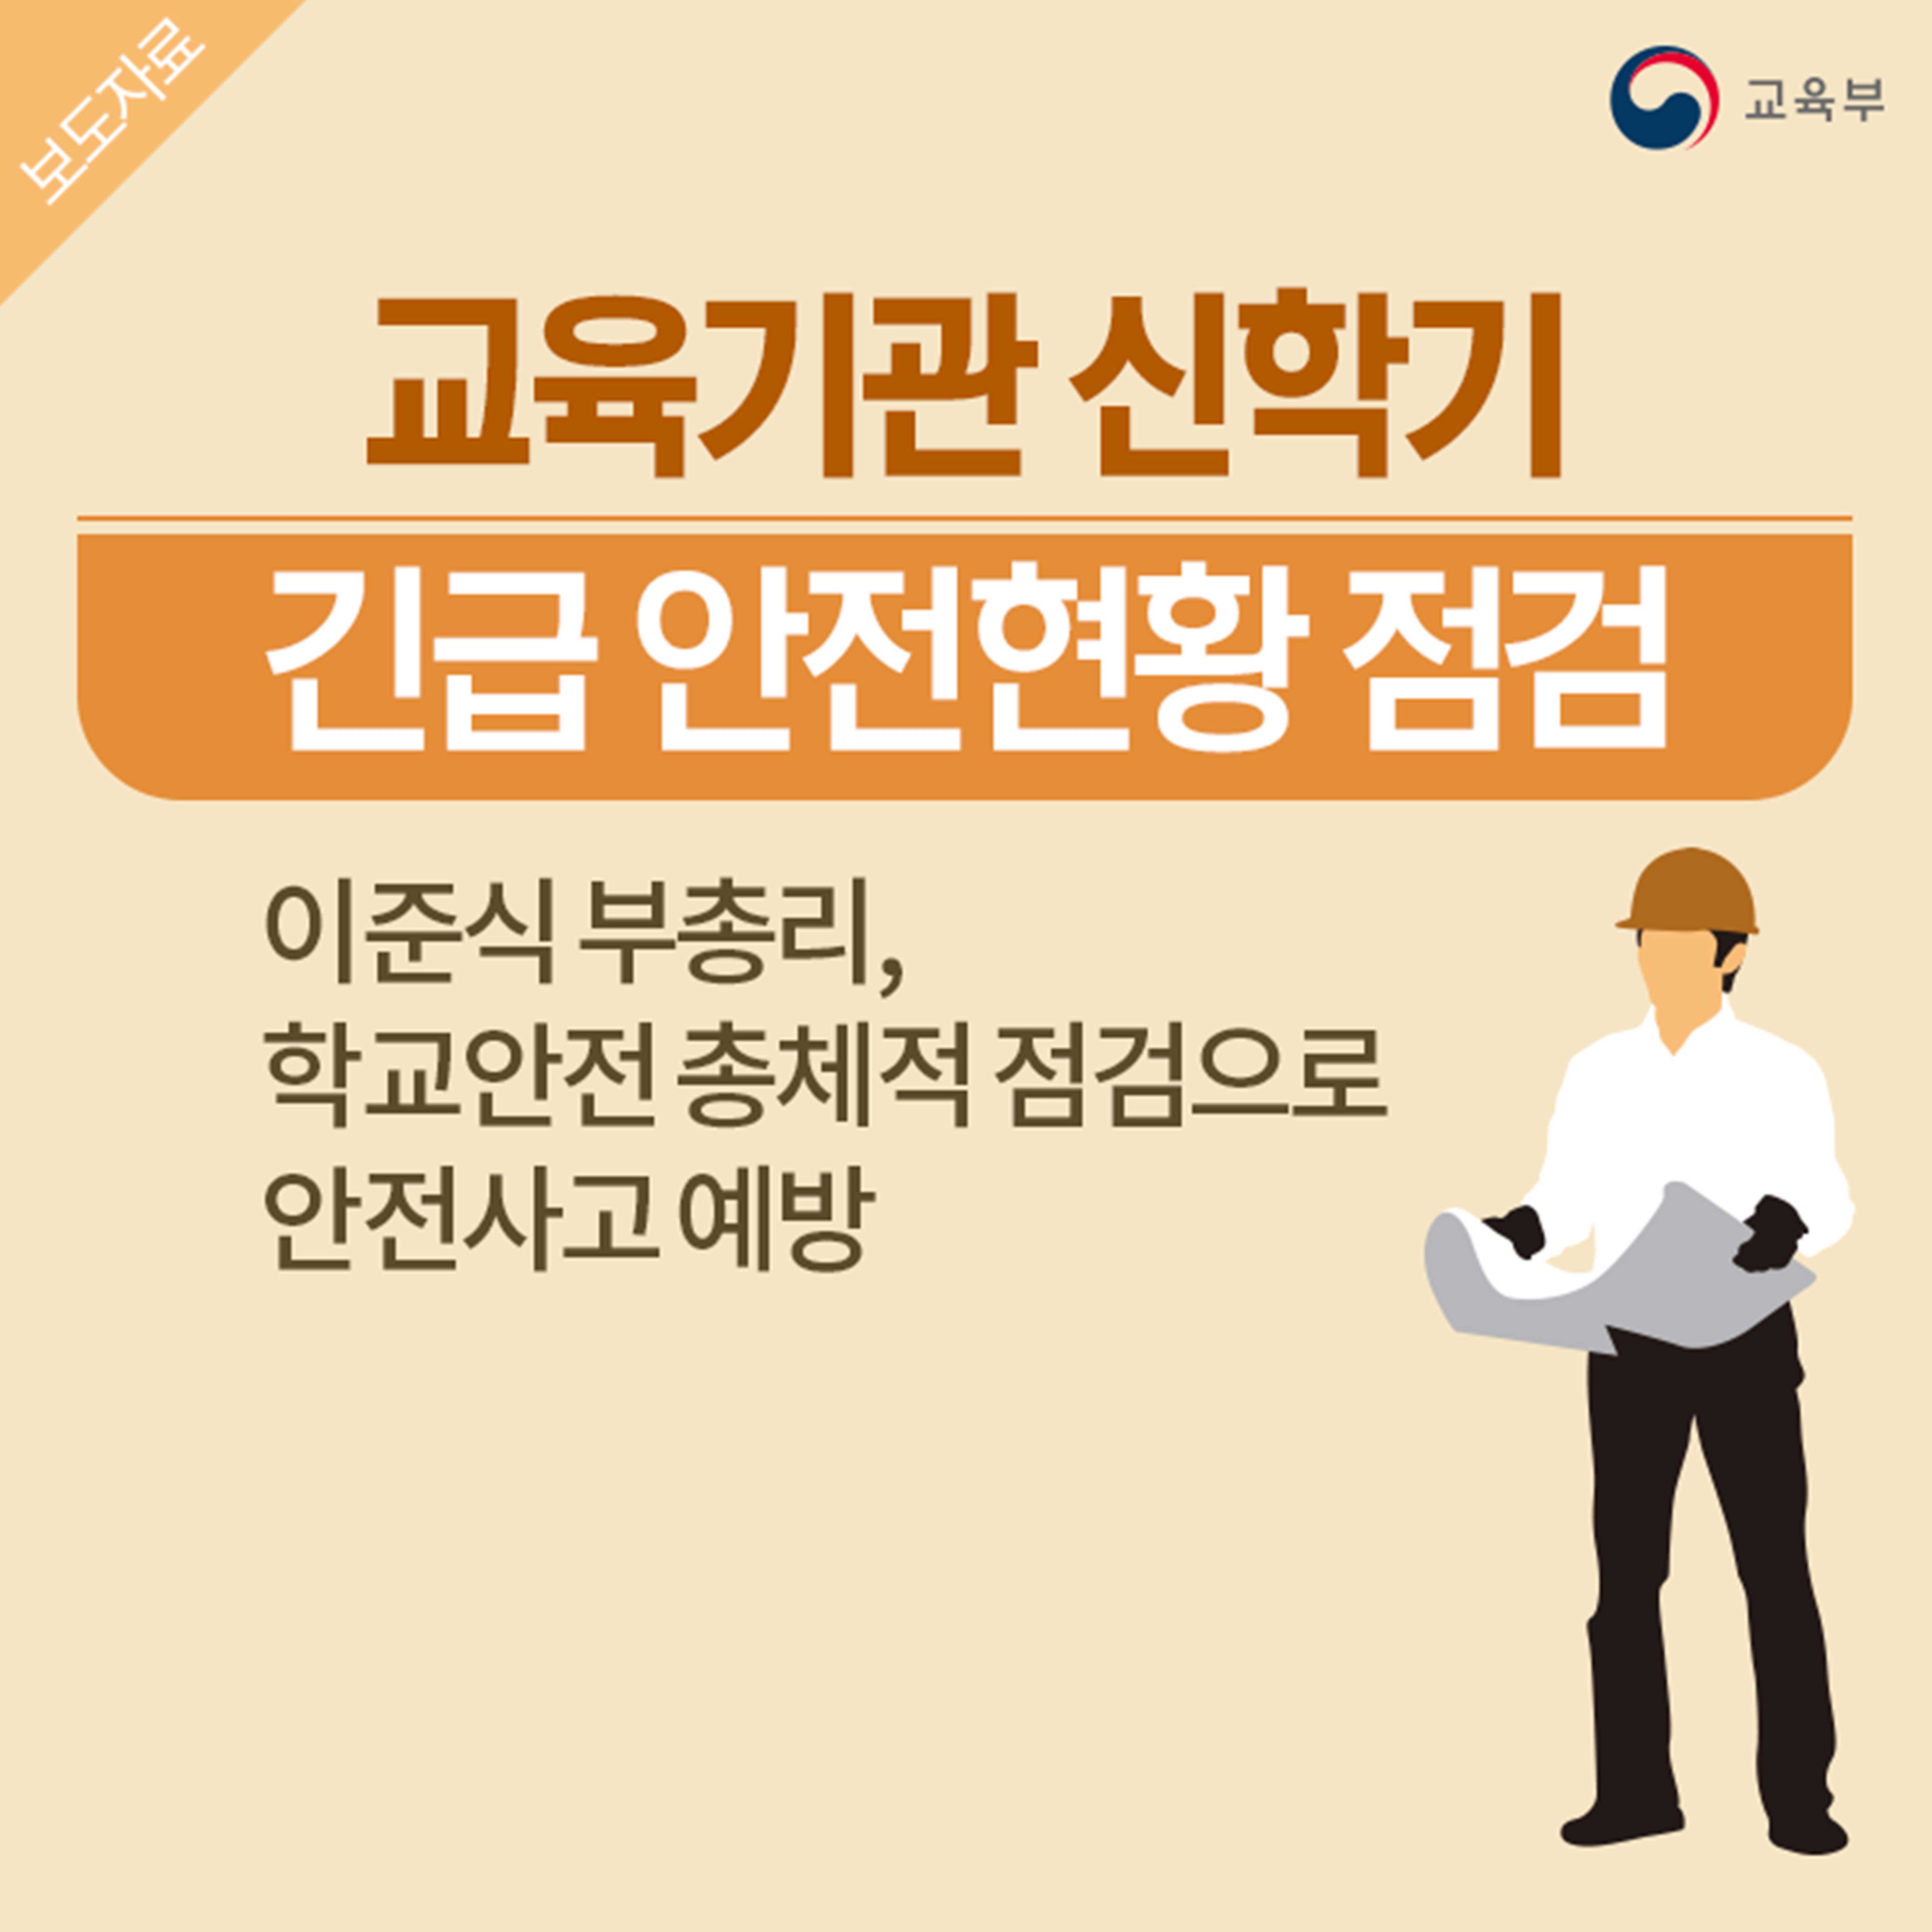 출처:대한민국 교육부 공식 블로그